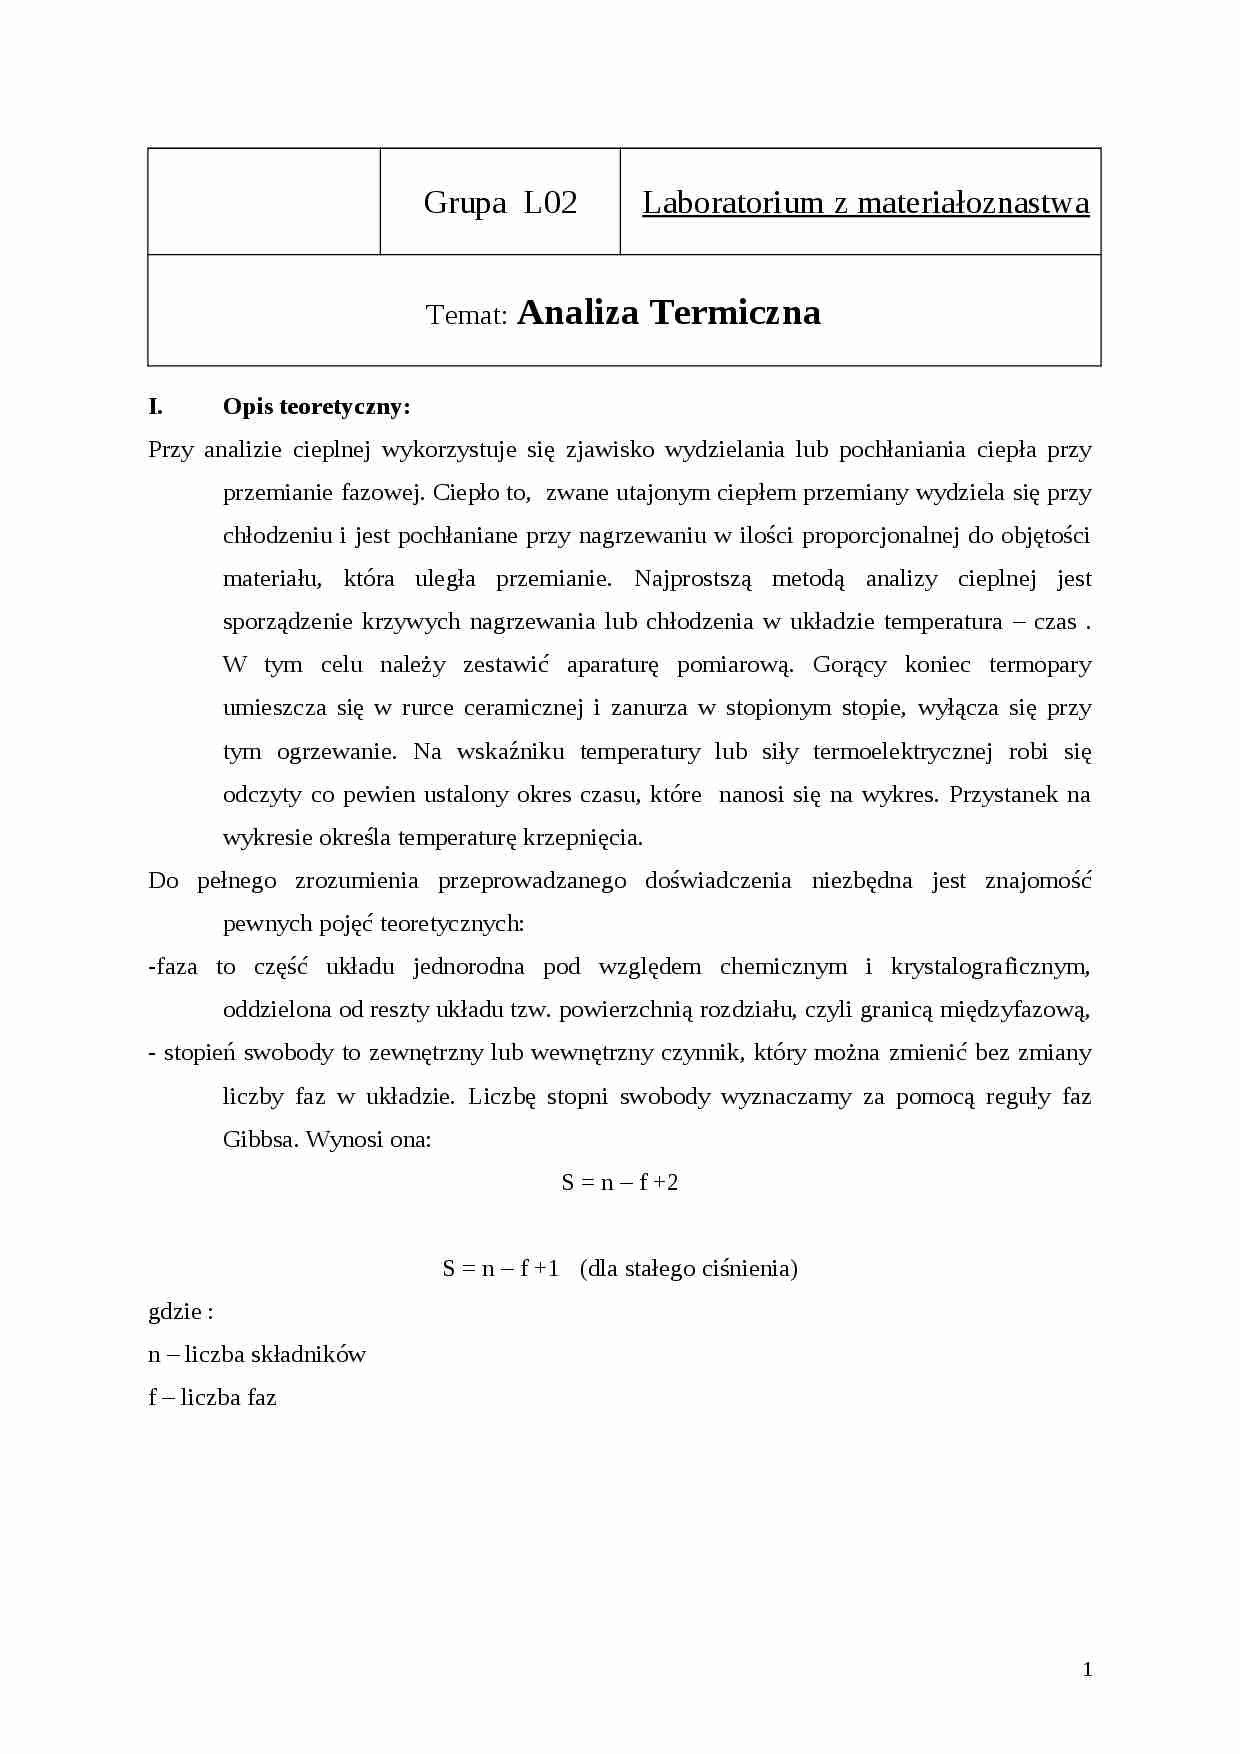 Techniki wytwarzania - Analiza Termiczna - strona 1